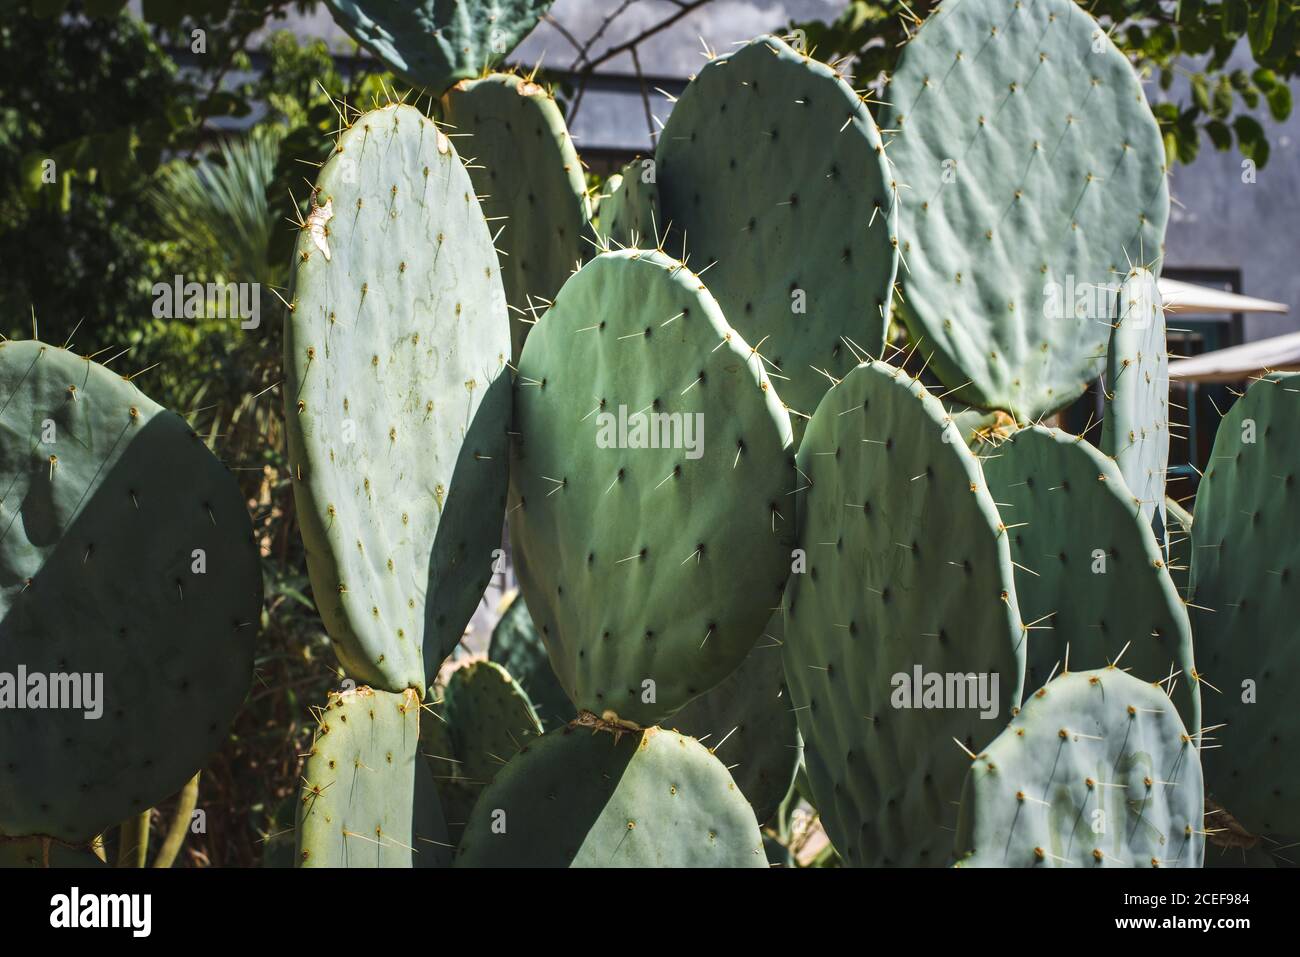 Cactus plant in a garden Stock Photo